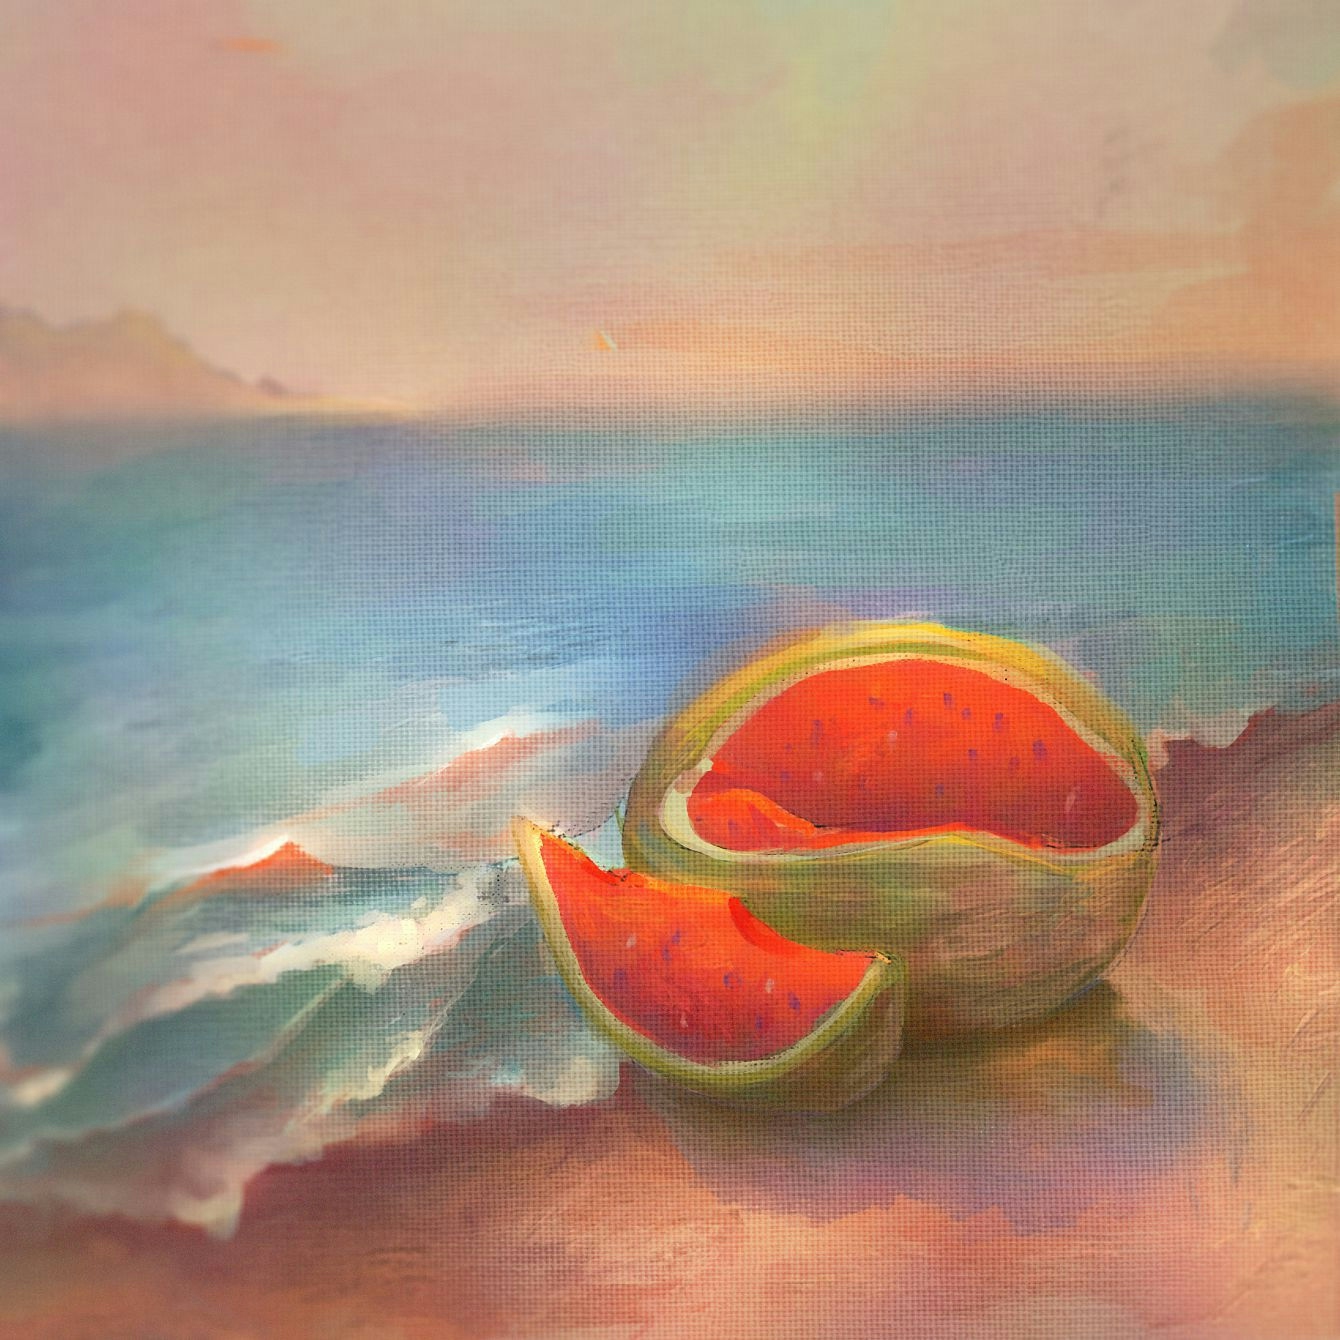 Watermelon in the beach